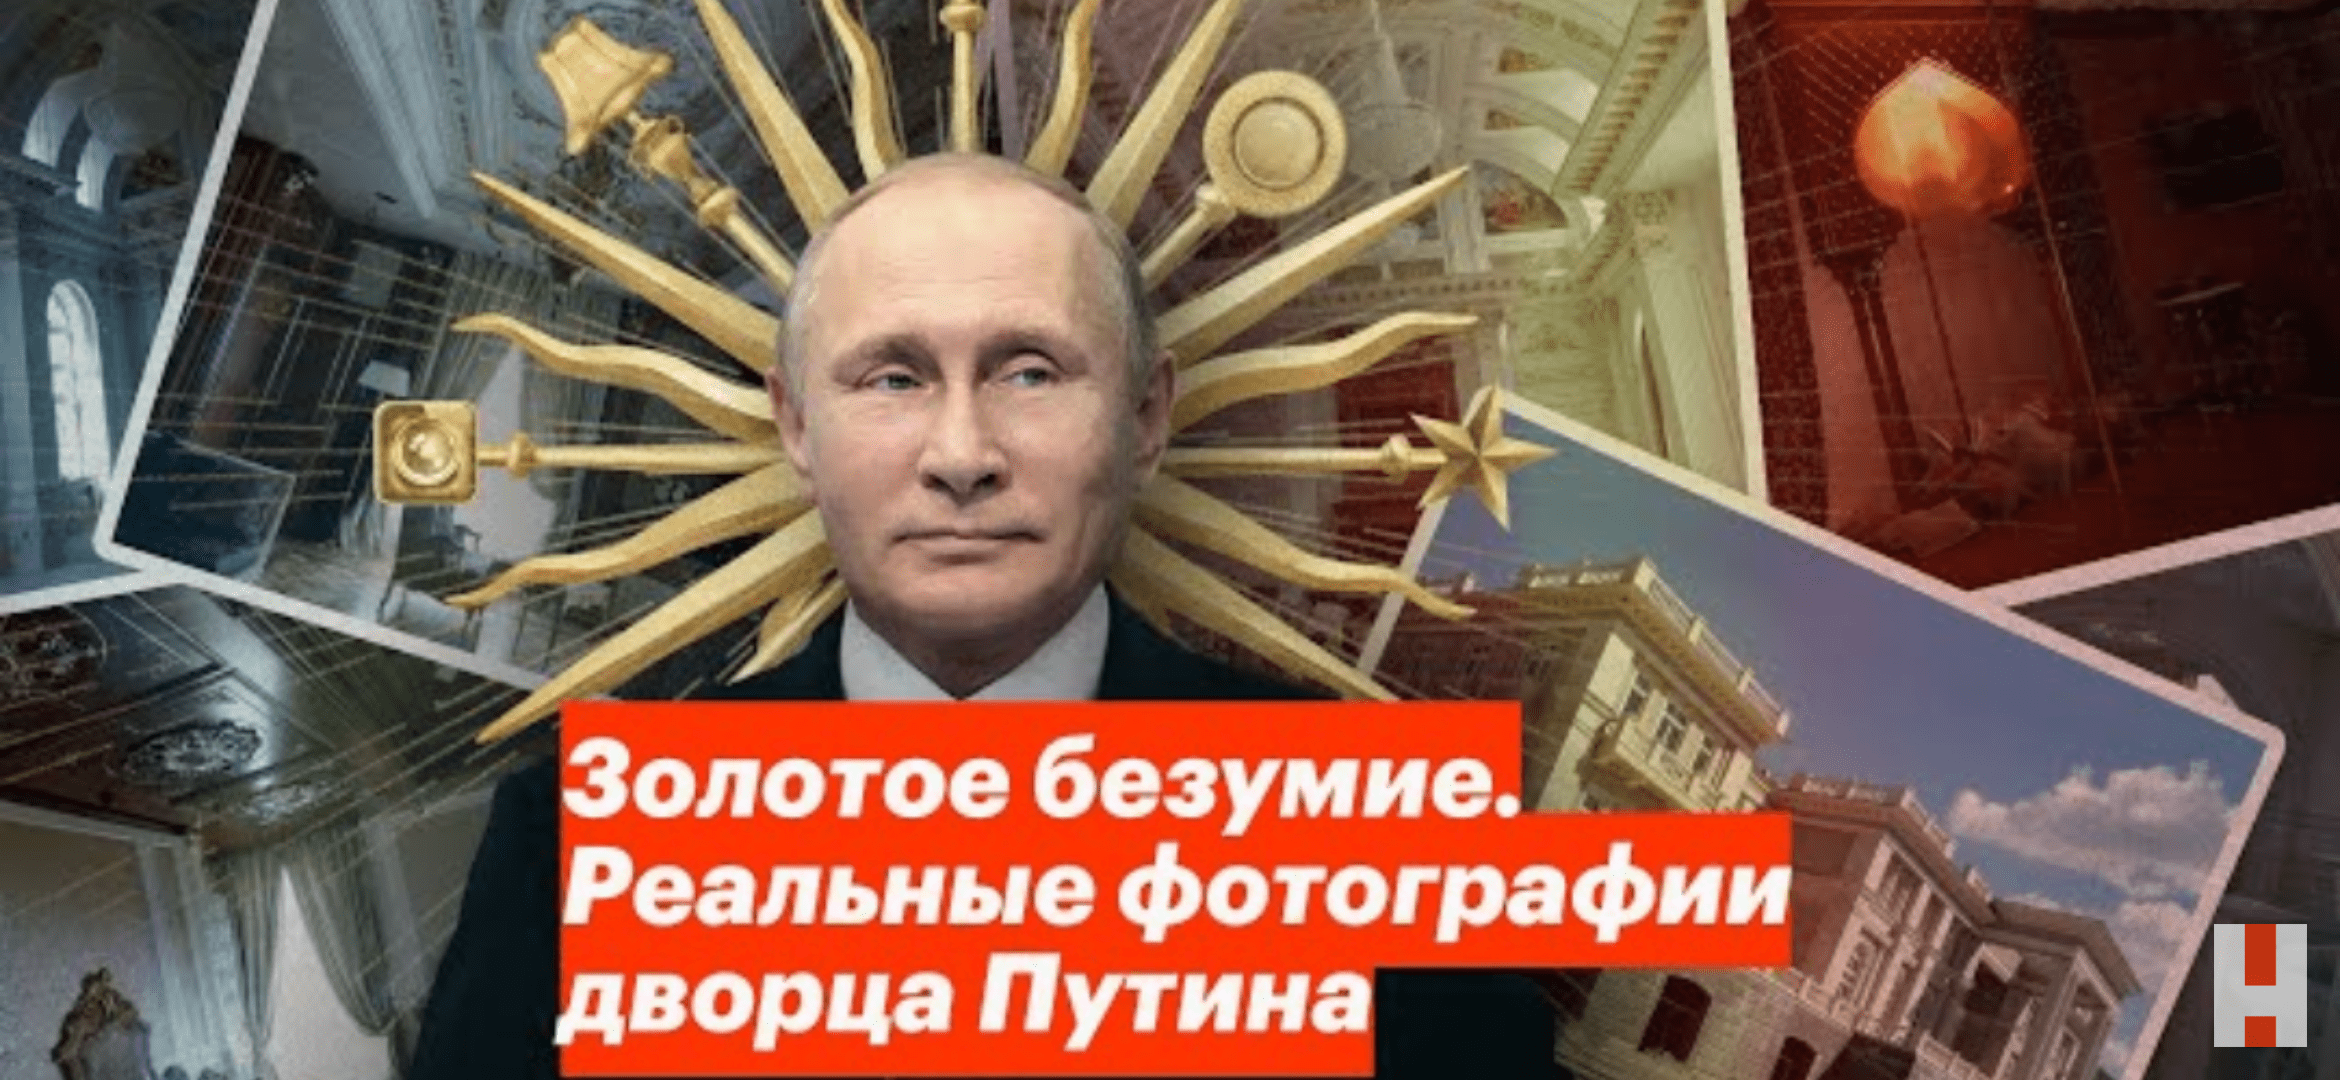 「原発を砲撃」ロシアのウクライナ侵攻で再注目「1.2億回再生」された総工費1400億円「プーチン宮殿」告発動画の全貌！公開者は「毒殺未遂」の恐怖の画像